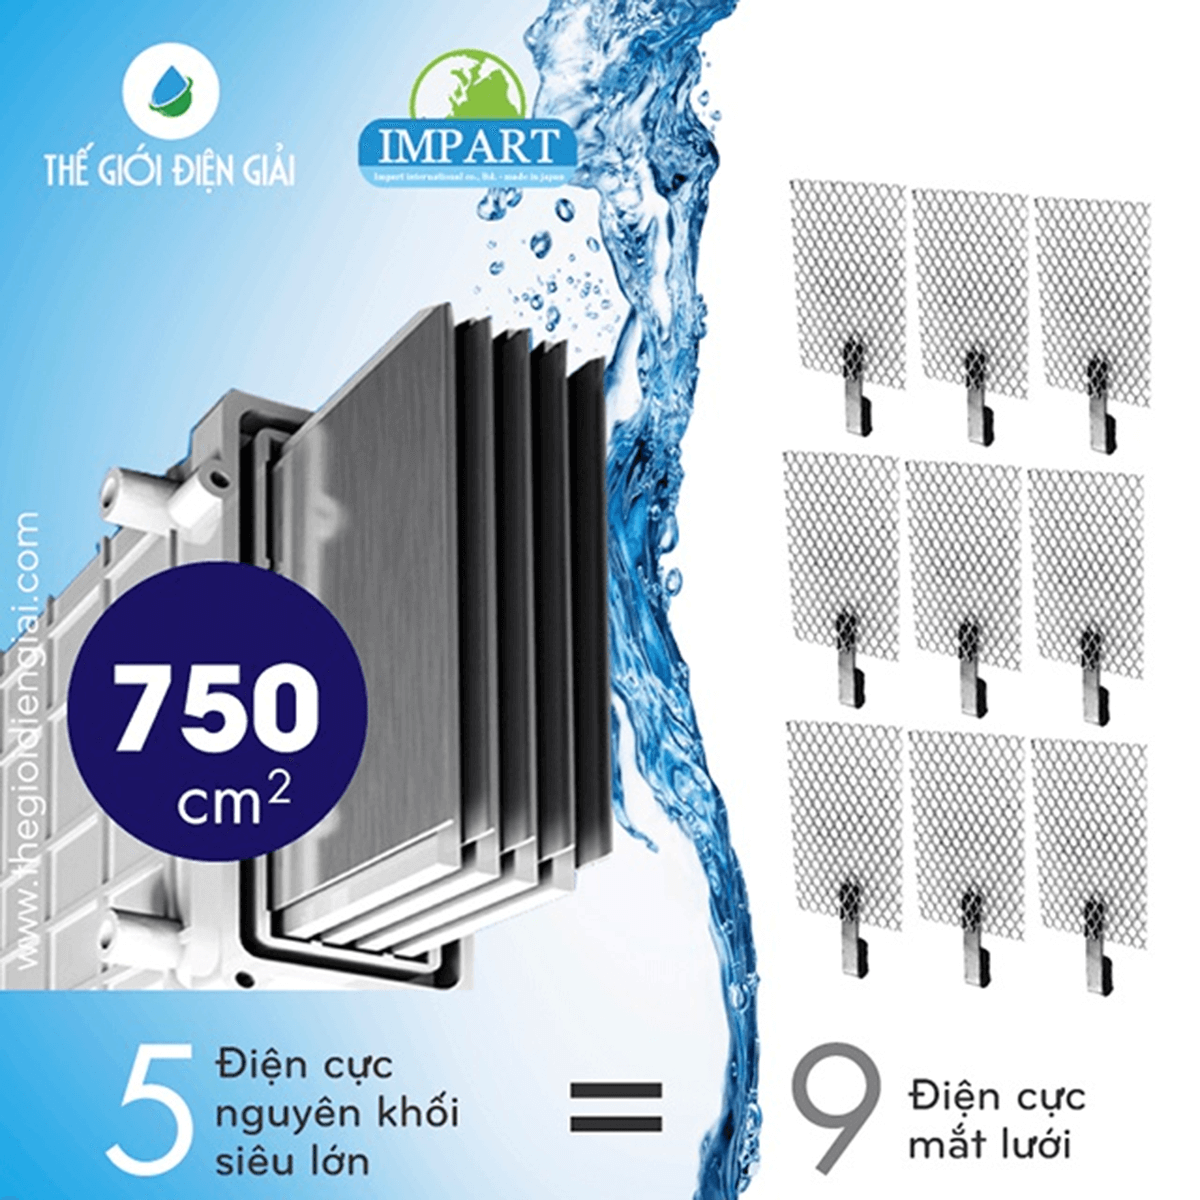 Tổng diện tích tiếp xúc tấm điện cực của máy lọc nước ion kiềm Impart lên đến 750 cm2